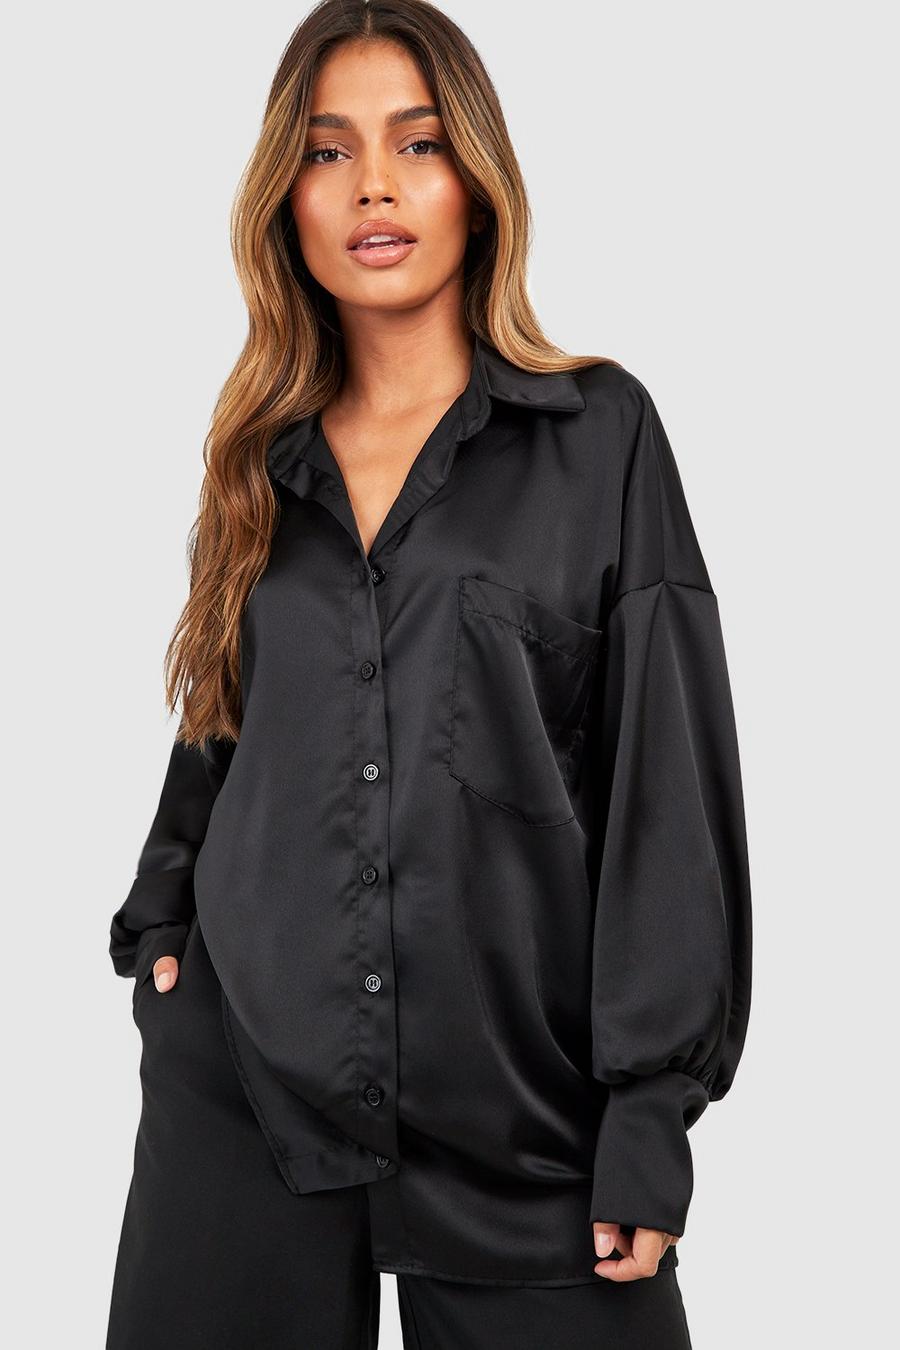 Satin-Hemd mit weiten Ärmeln und Taschen-Detail, Black